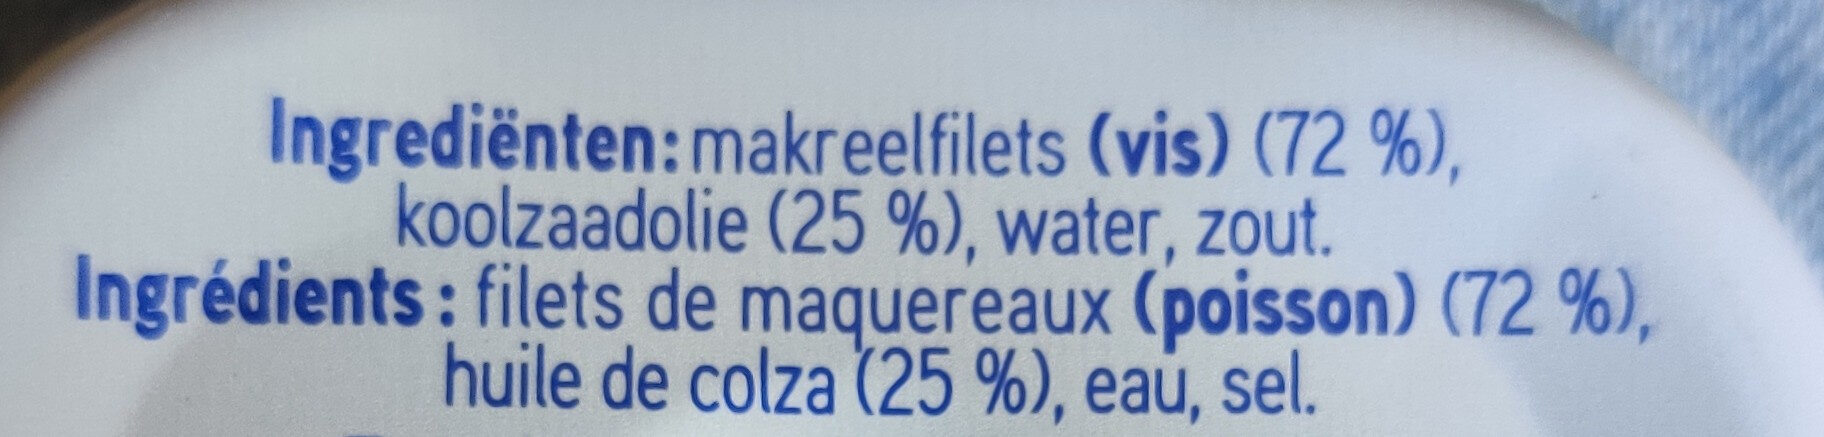 Filets de maquereaux à huile de colza - Ingrediënten - fr